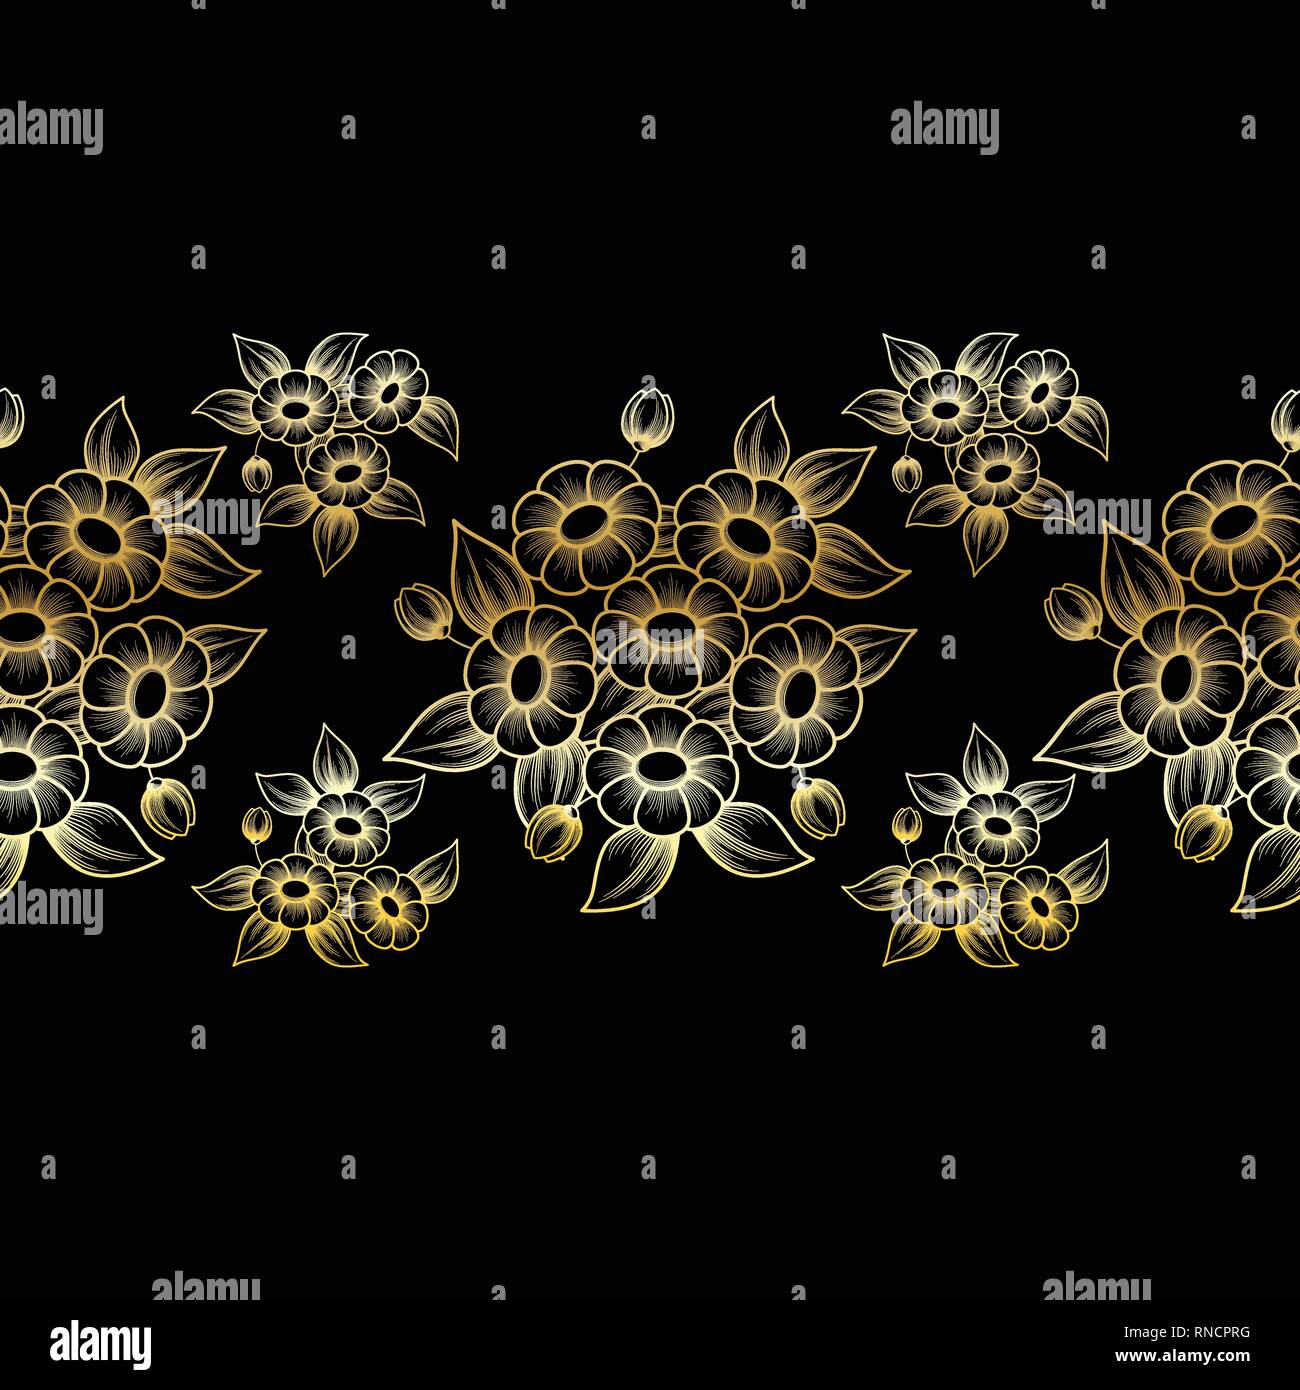 Horizontal transparent couleur or motif floral Contour daisy isolé sur fond noir Illustration de Vecteur